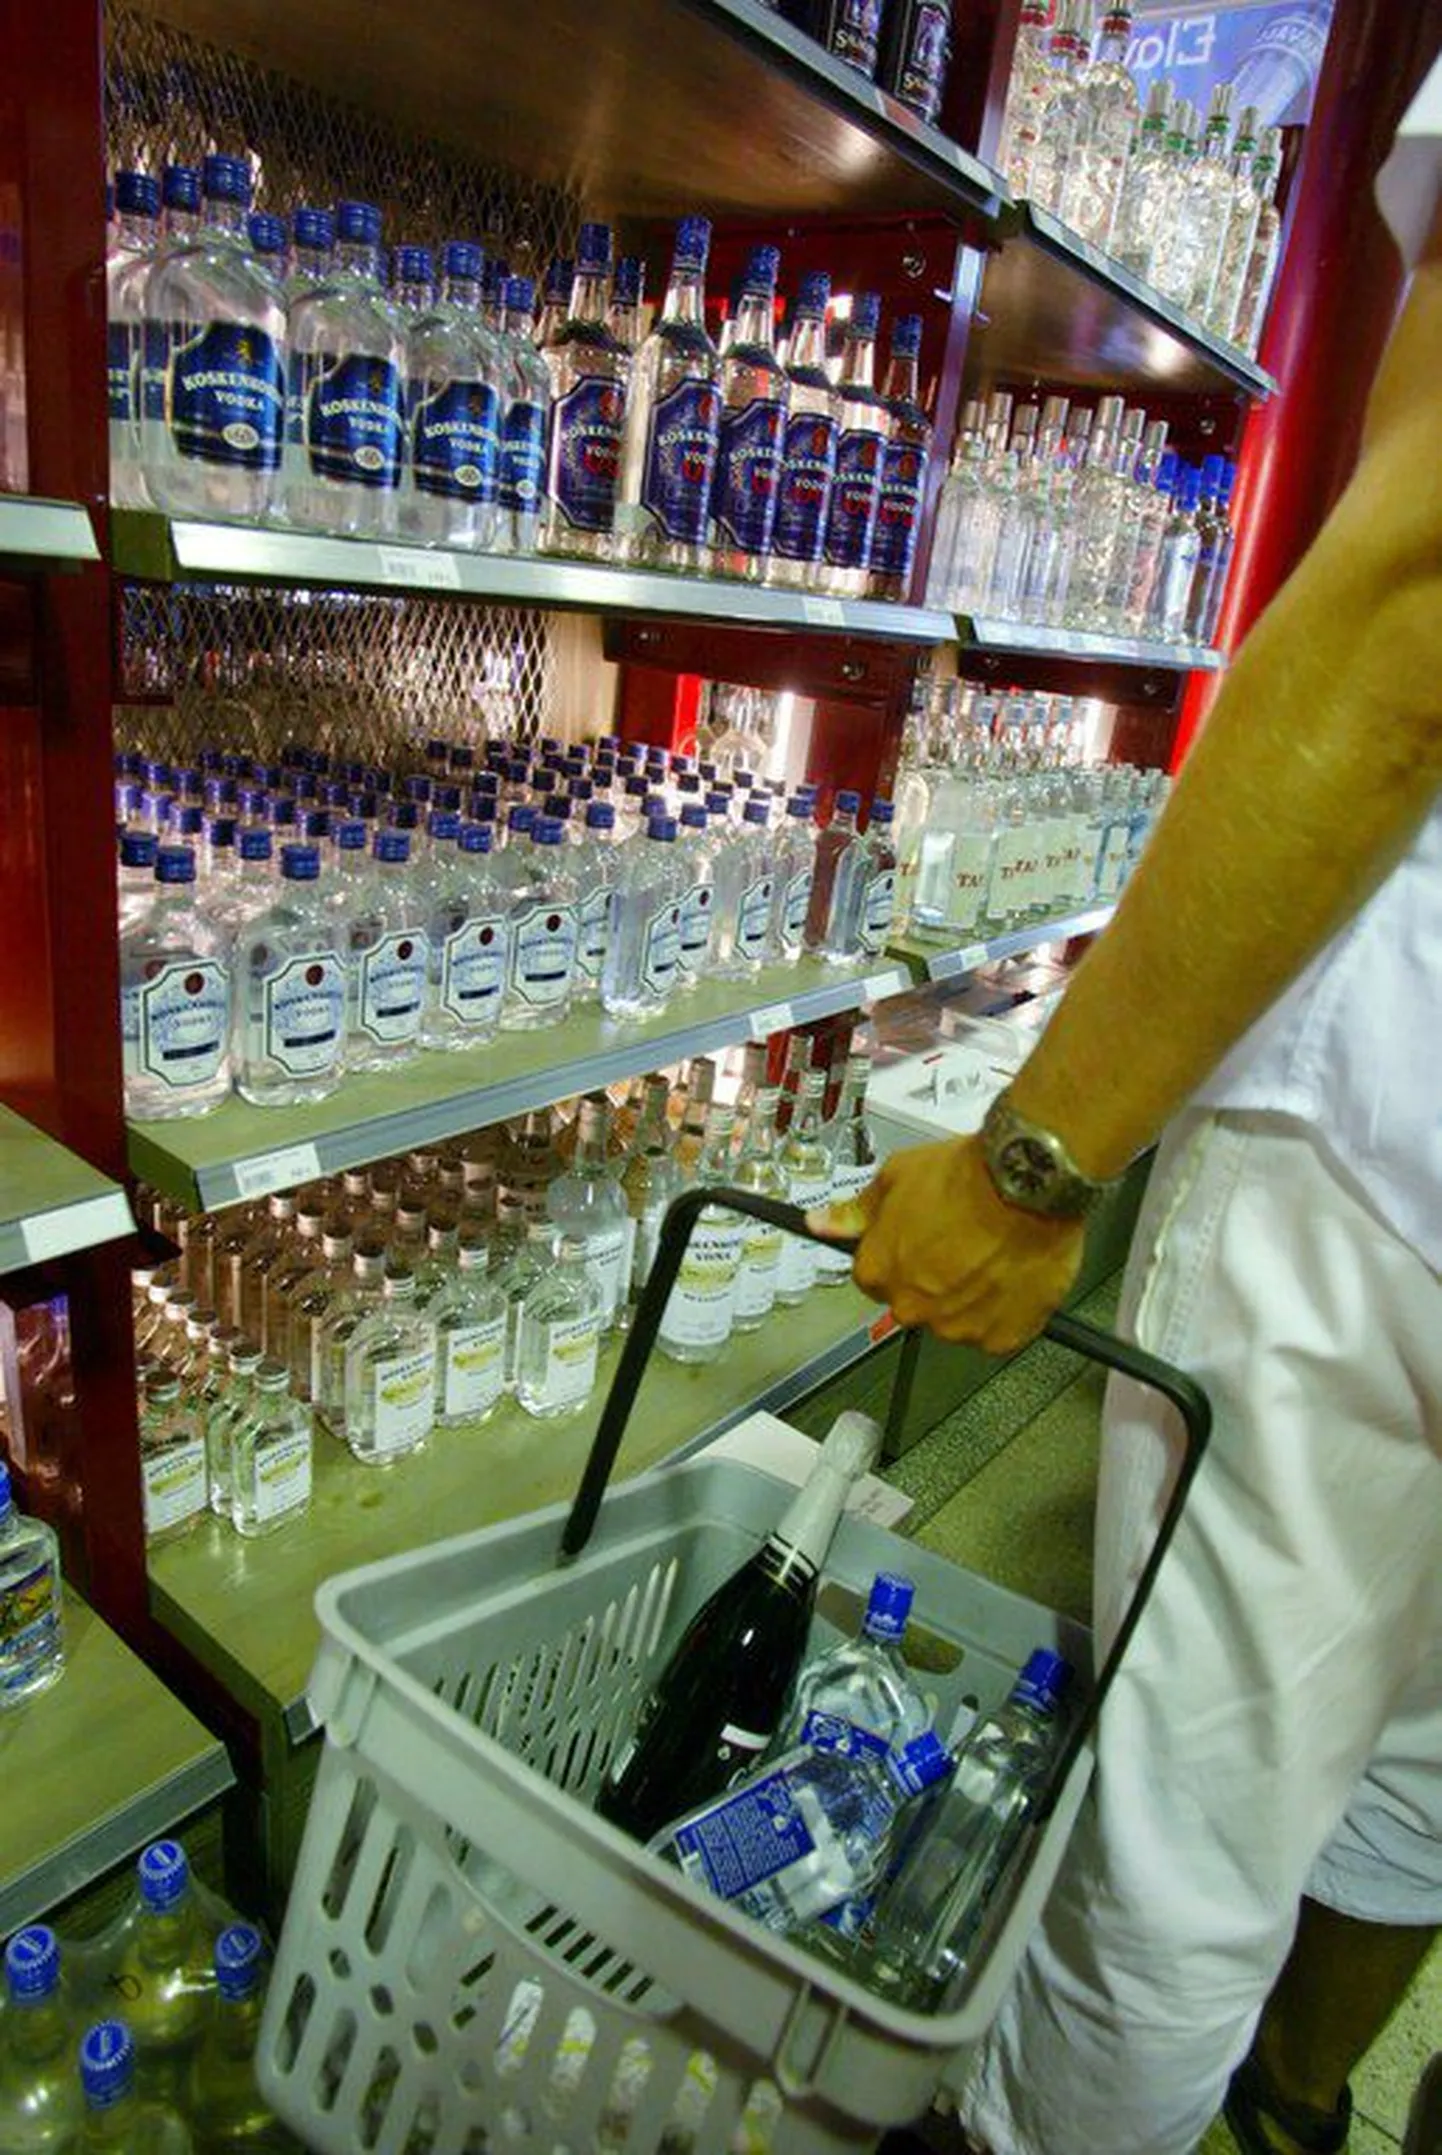 Kauplused on kohustatud alkoholi müües veenduma, et ostja on täisealine. Foto on illustratiivne.